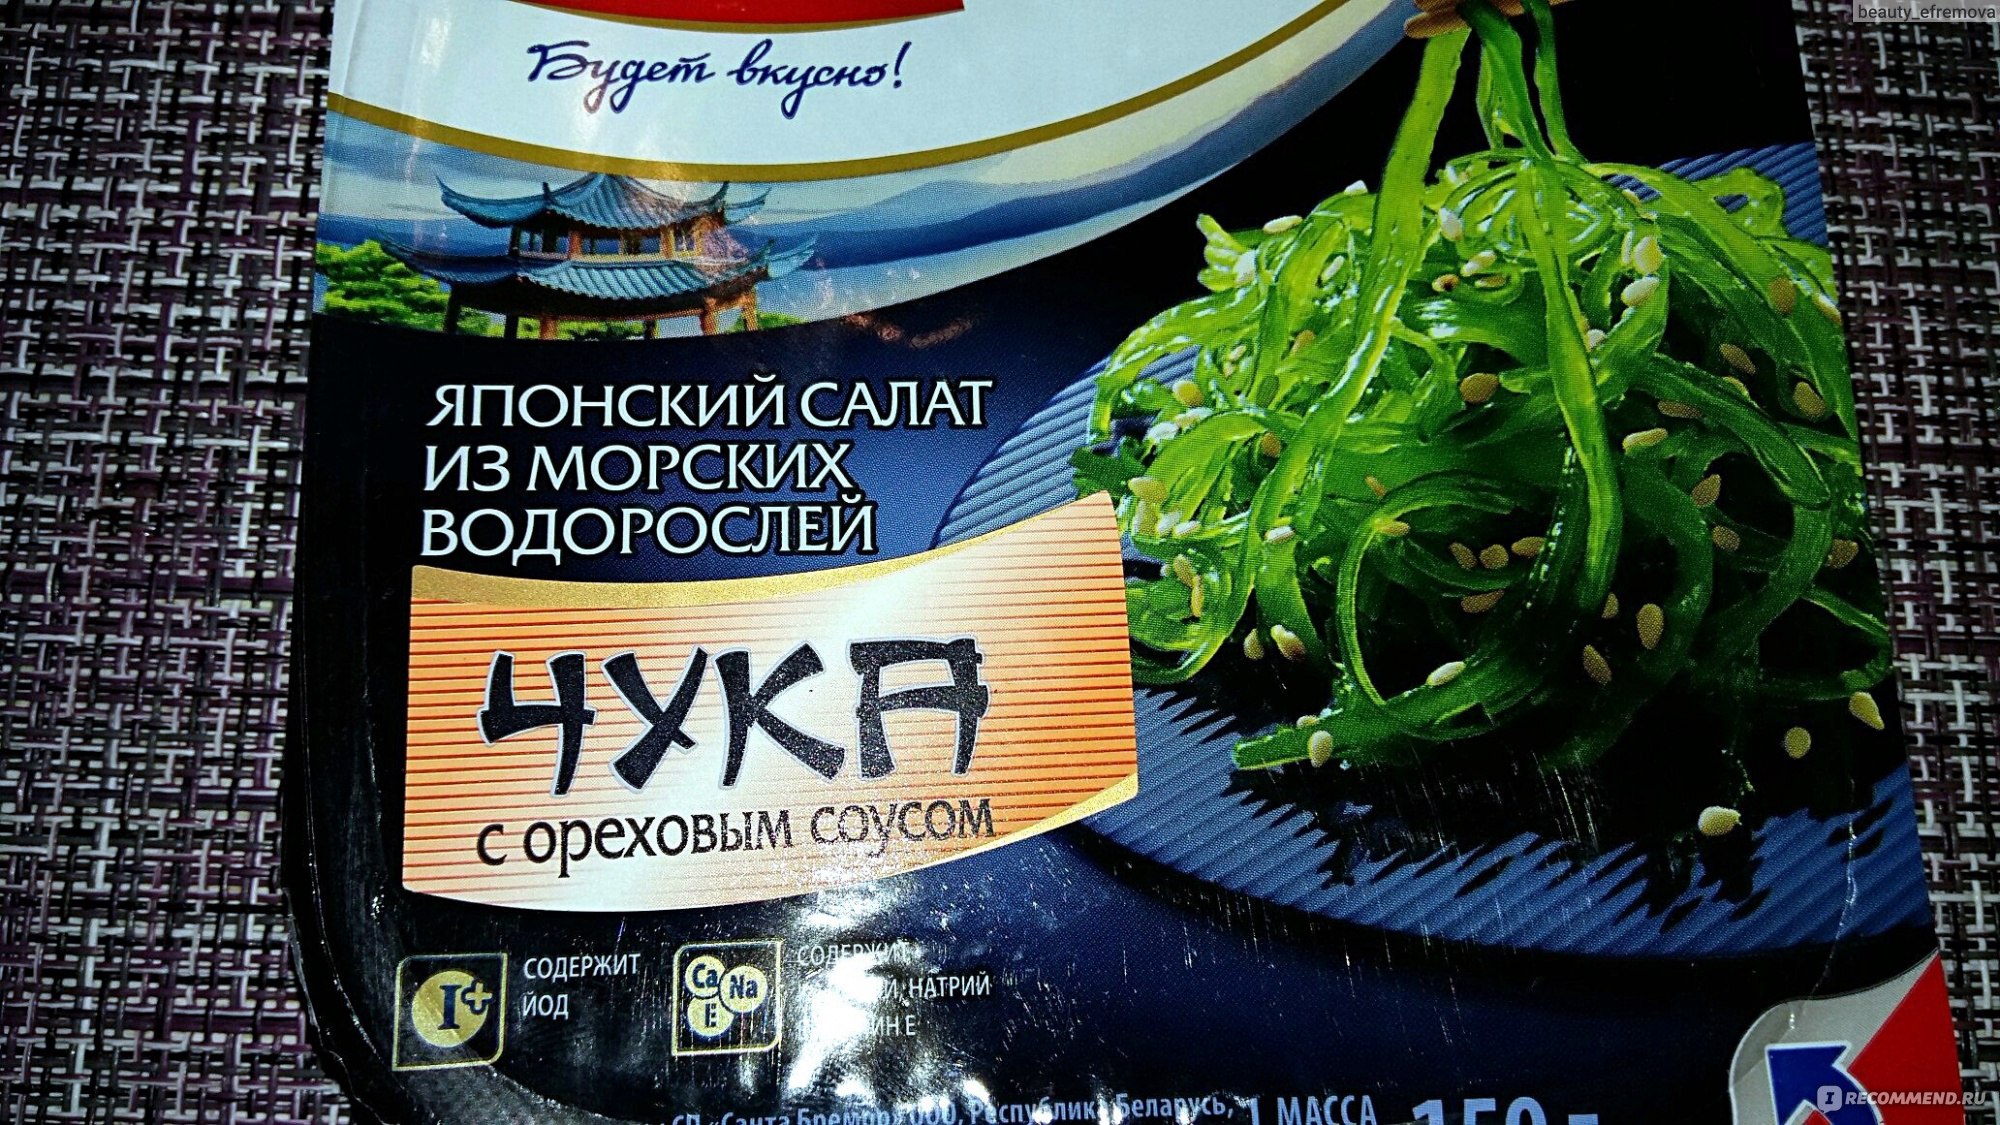 Чука польза и вред. Японский салат из морских водорослей чука. Балтийский берег салат чука 250 грамм. Чука Балтийский берег. Морские водоросли чука чука.